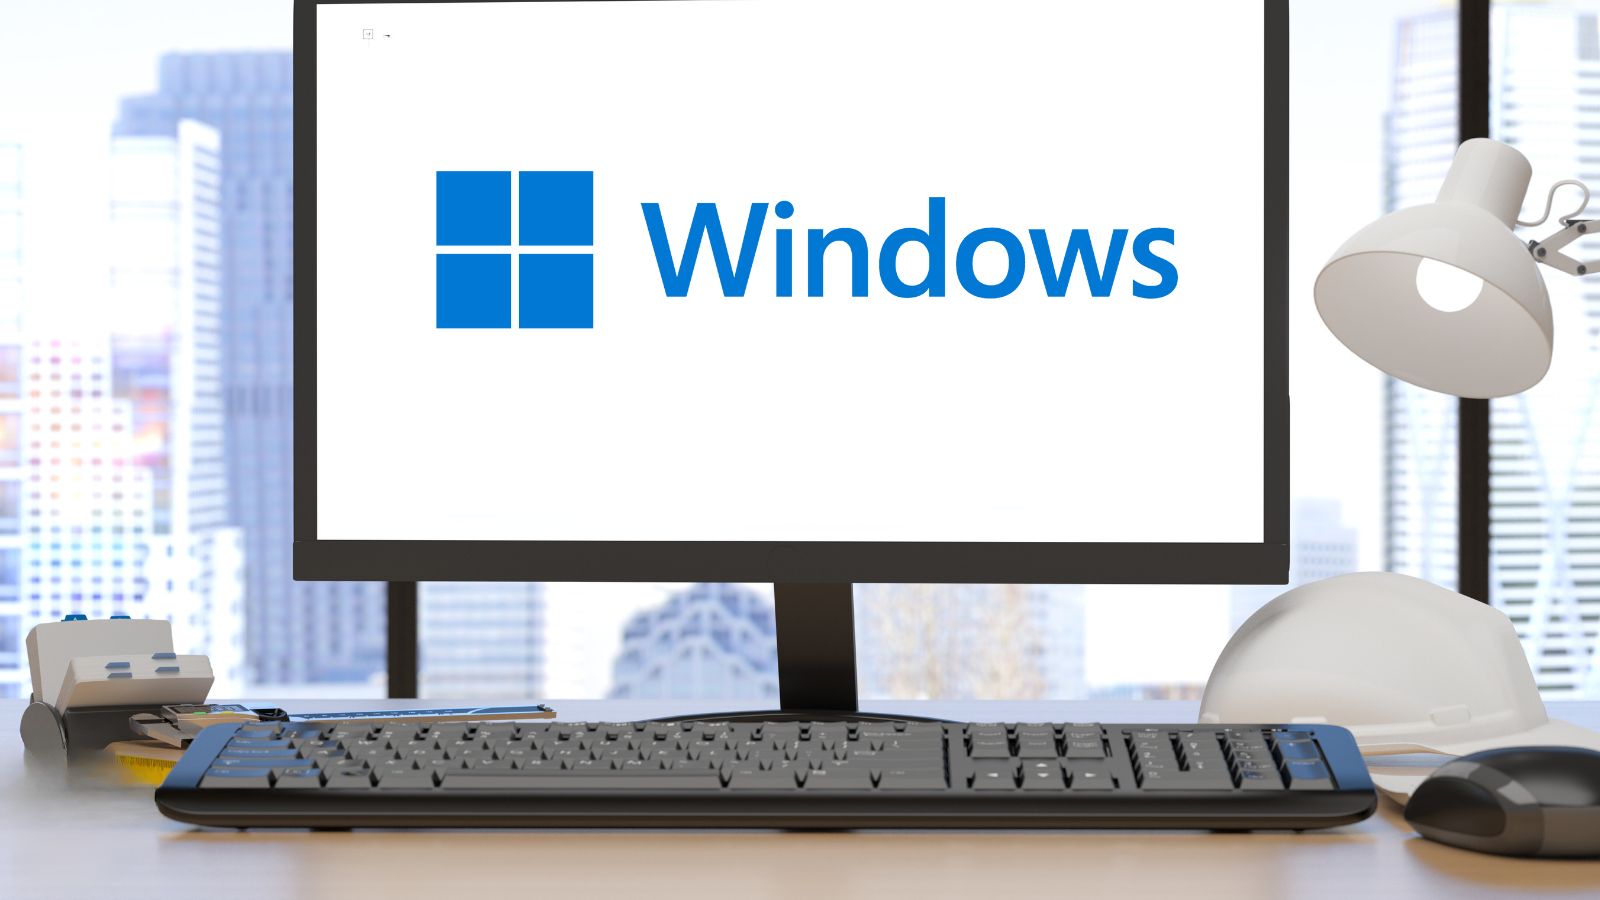 Windows 10 21H2 va in pensione: cosa fare? 